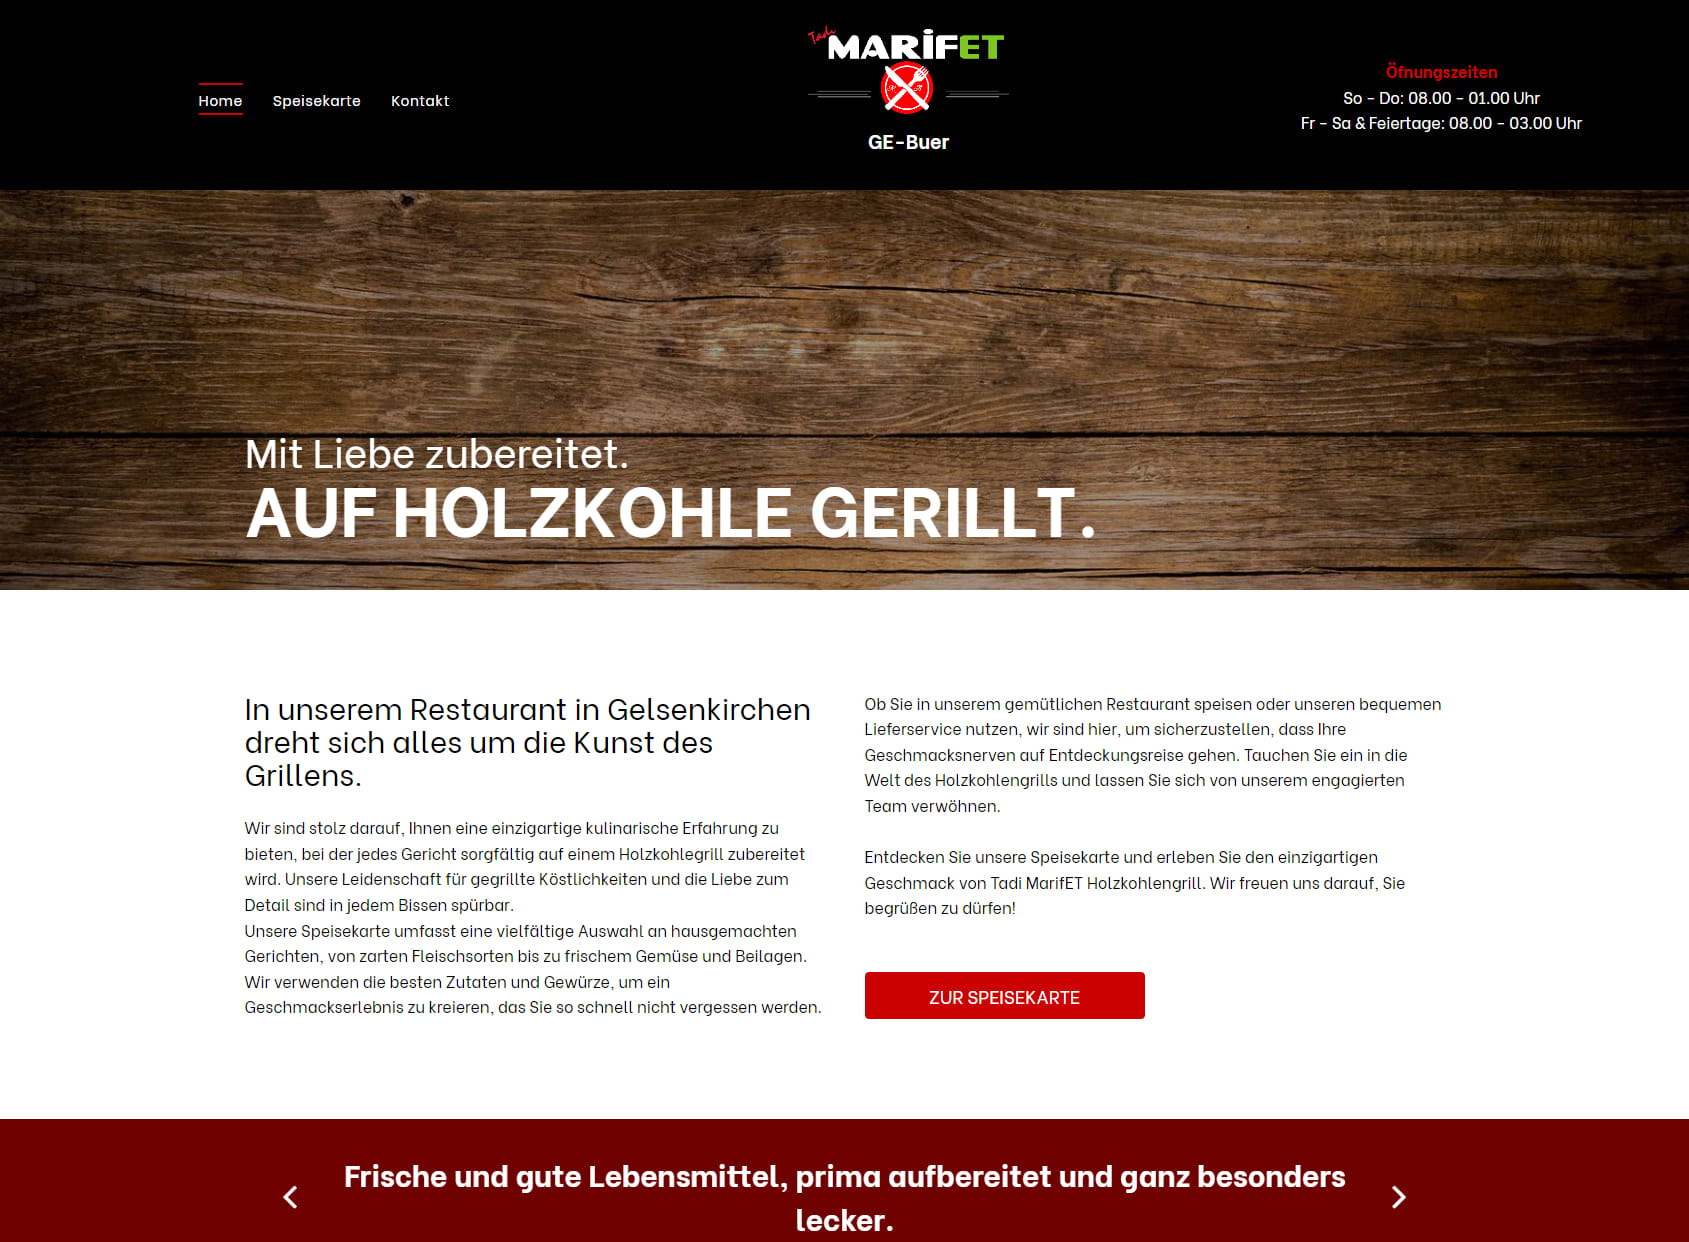 Tadi MarifET Holzkohlengrill GmbH